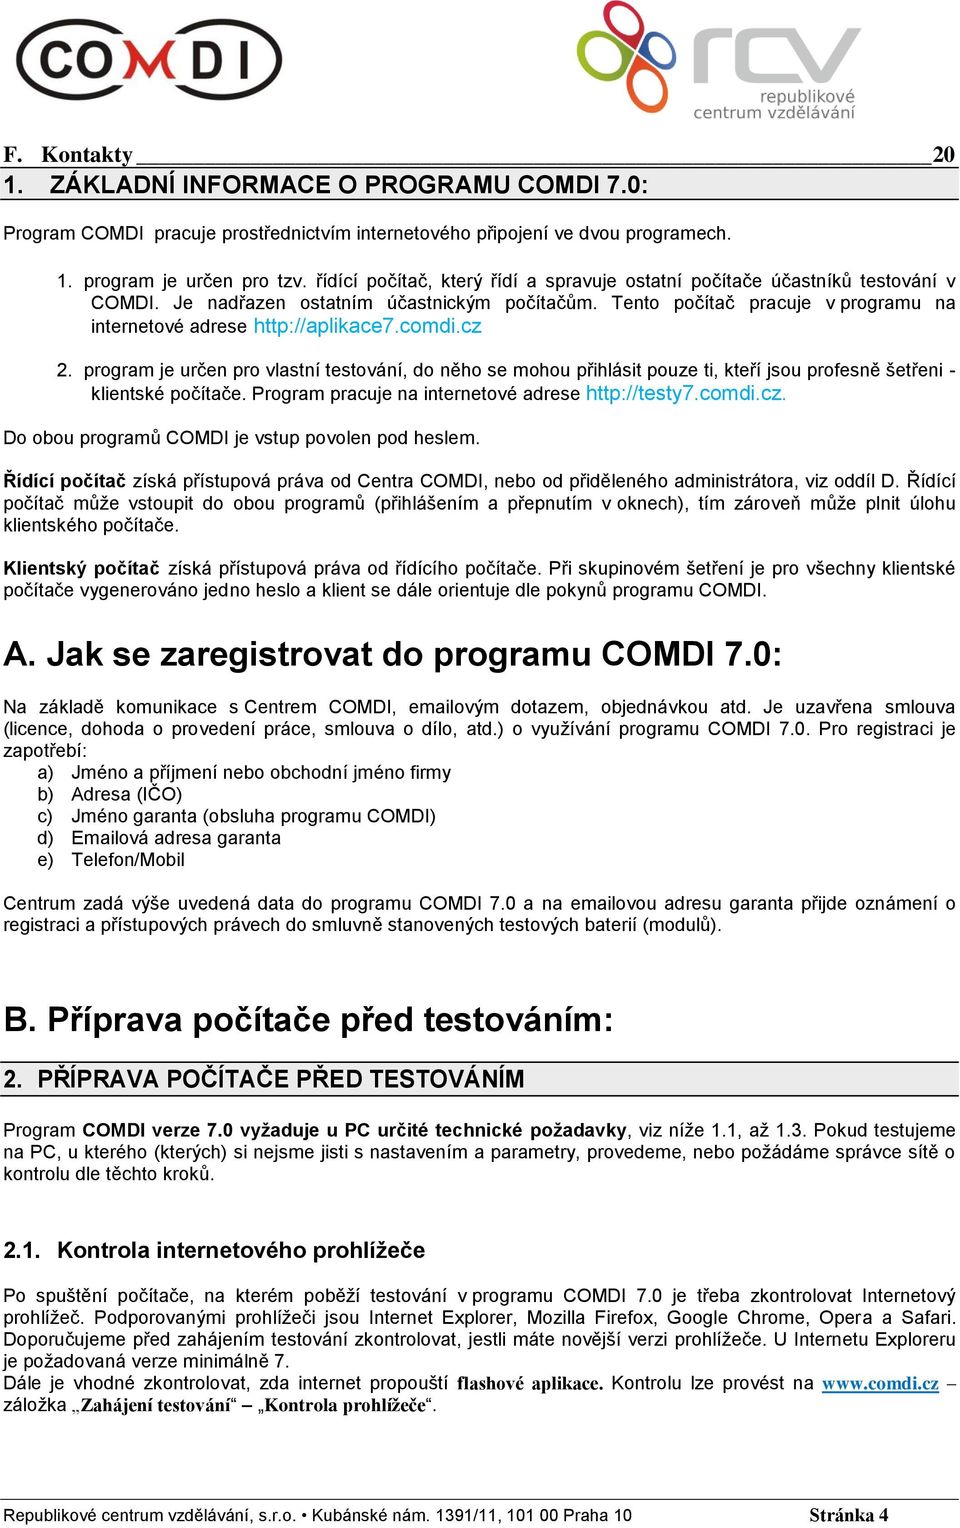 comdi.cz 2. program je určen pro vlastní testování, do něho se mohou přihlásit pouze ti, kteří jsou profesně šetřeni - klientské počítače. Program pracuje na internetové adrese http://testy7.comdi.cz. Do obou programů COMDI je vstup povolen pod heslem.